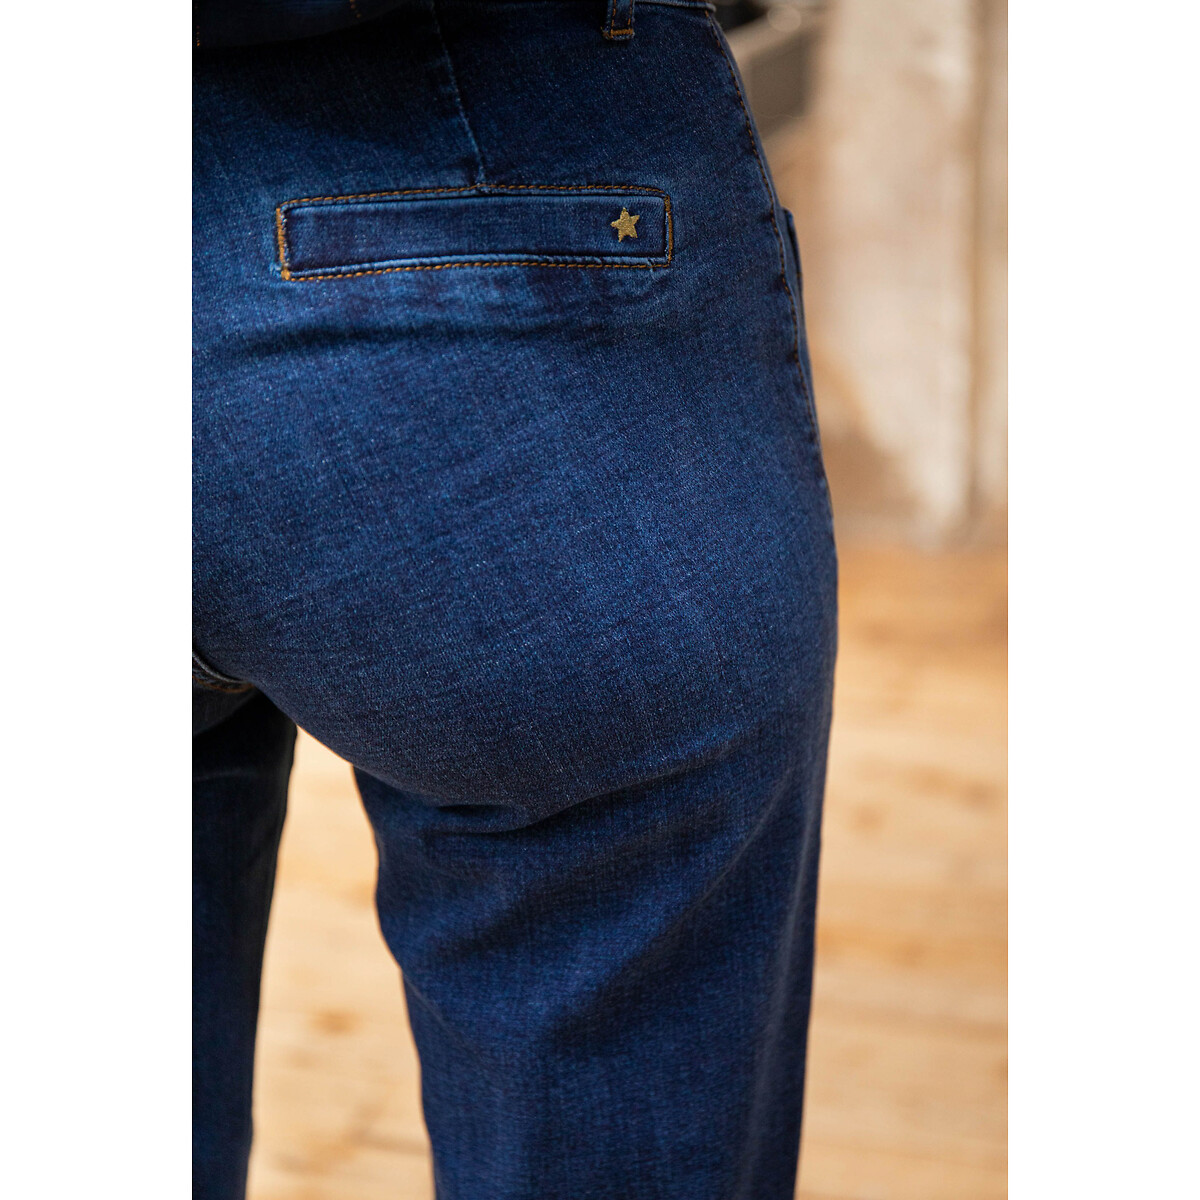 Pistola Baumwolle BOOTCUT-JEANS DANA in Blau Damen Bekleidung Jeans Jeans mit gerader Passform 